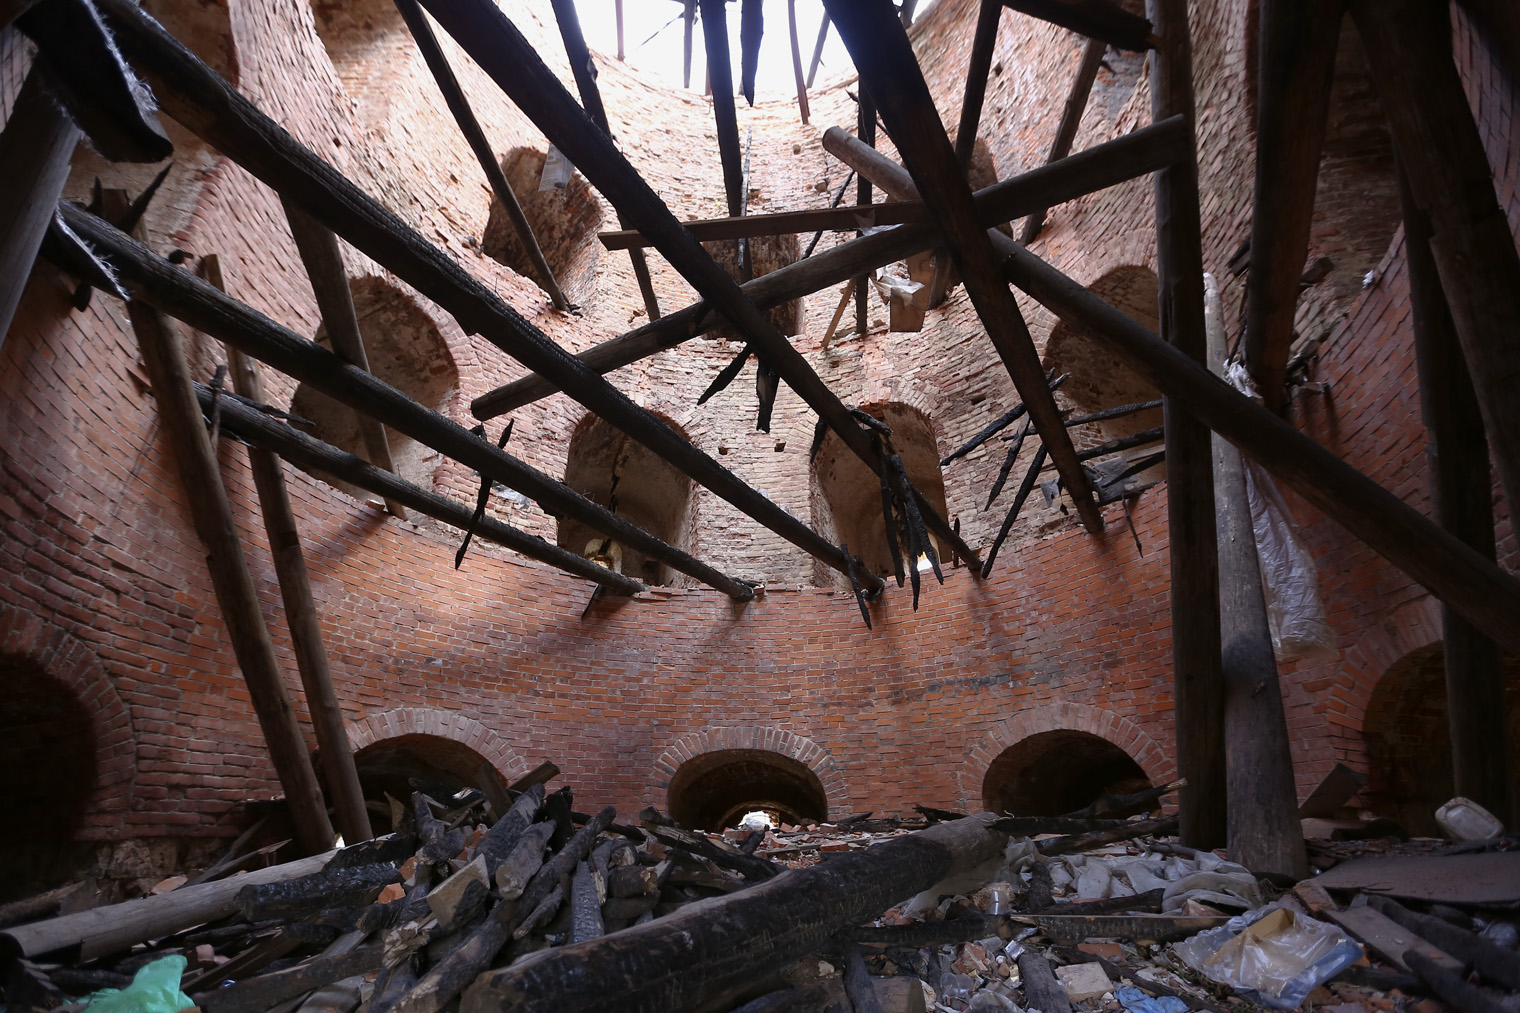 Внутри башни после пожара за десять лет никто так и не потрудился убрать обгоревшие балки или хотя бы мусор